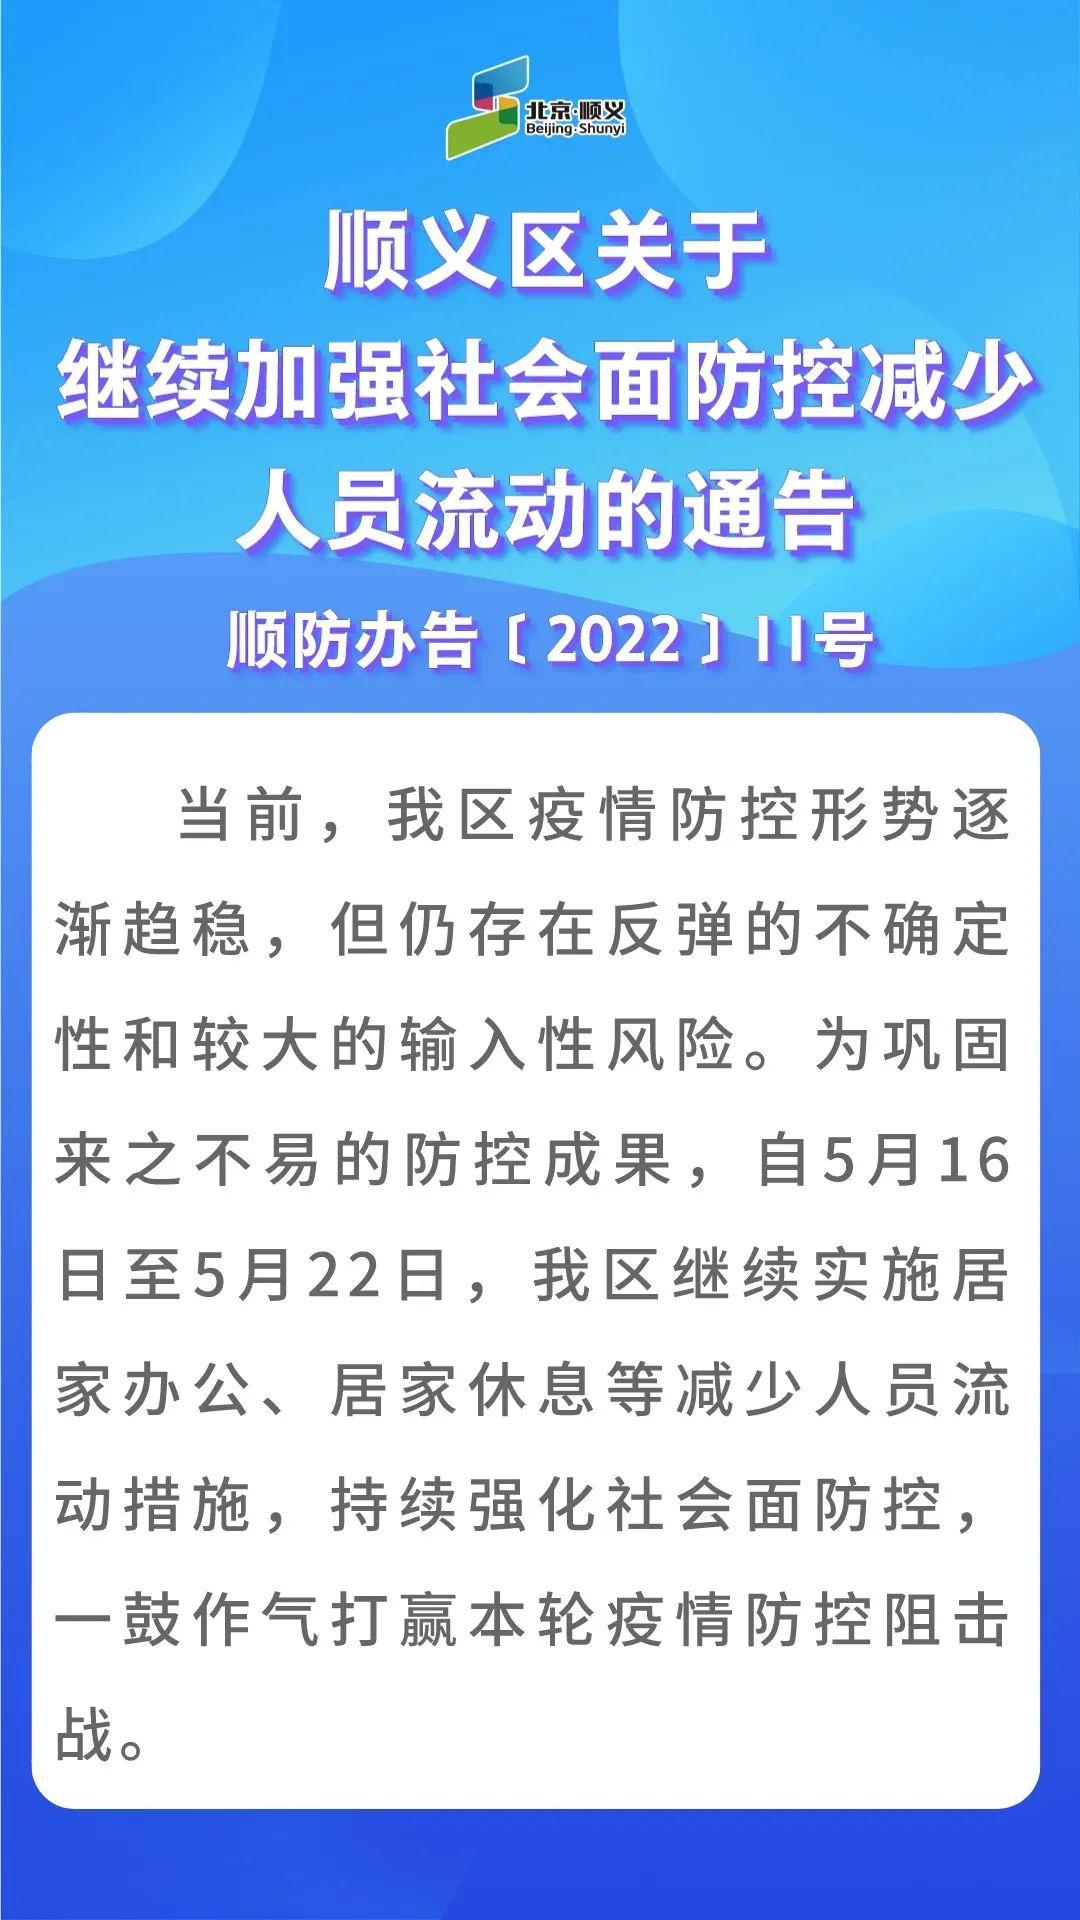 北京顺义：5月16日至22日继续实施居家办公、居家休息